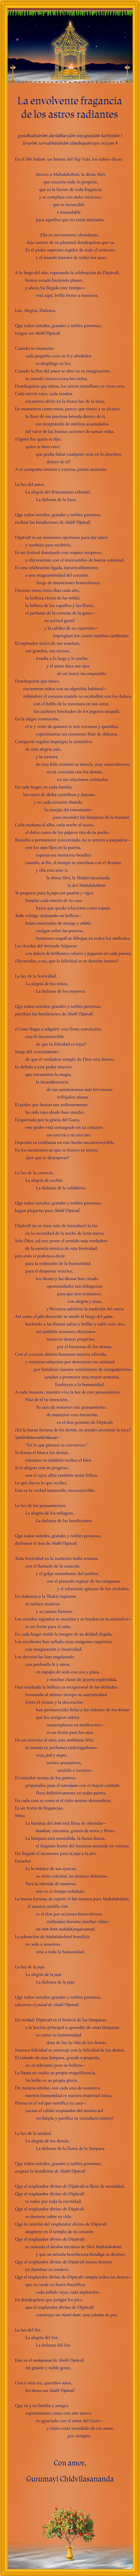 Spanish Poem